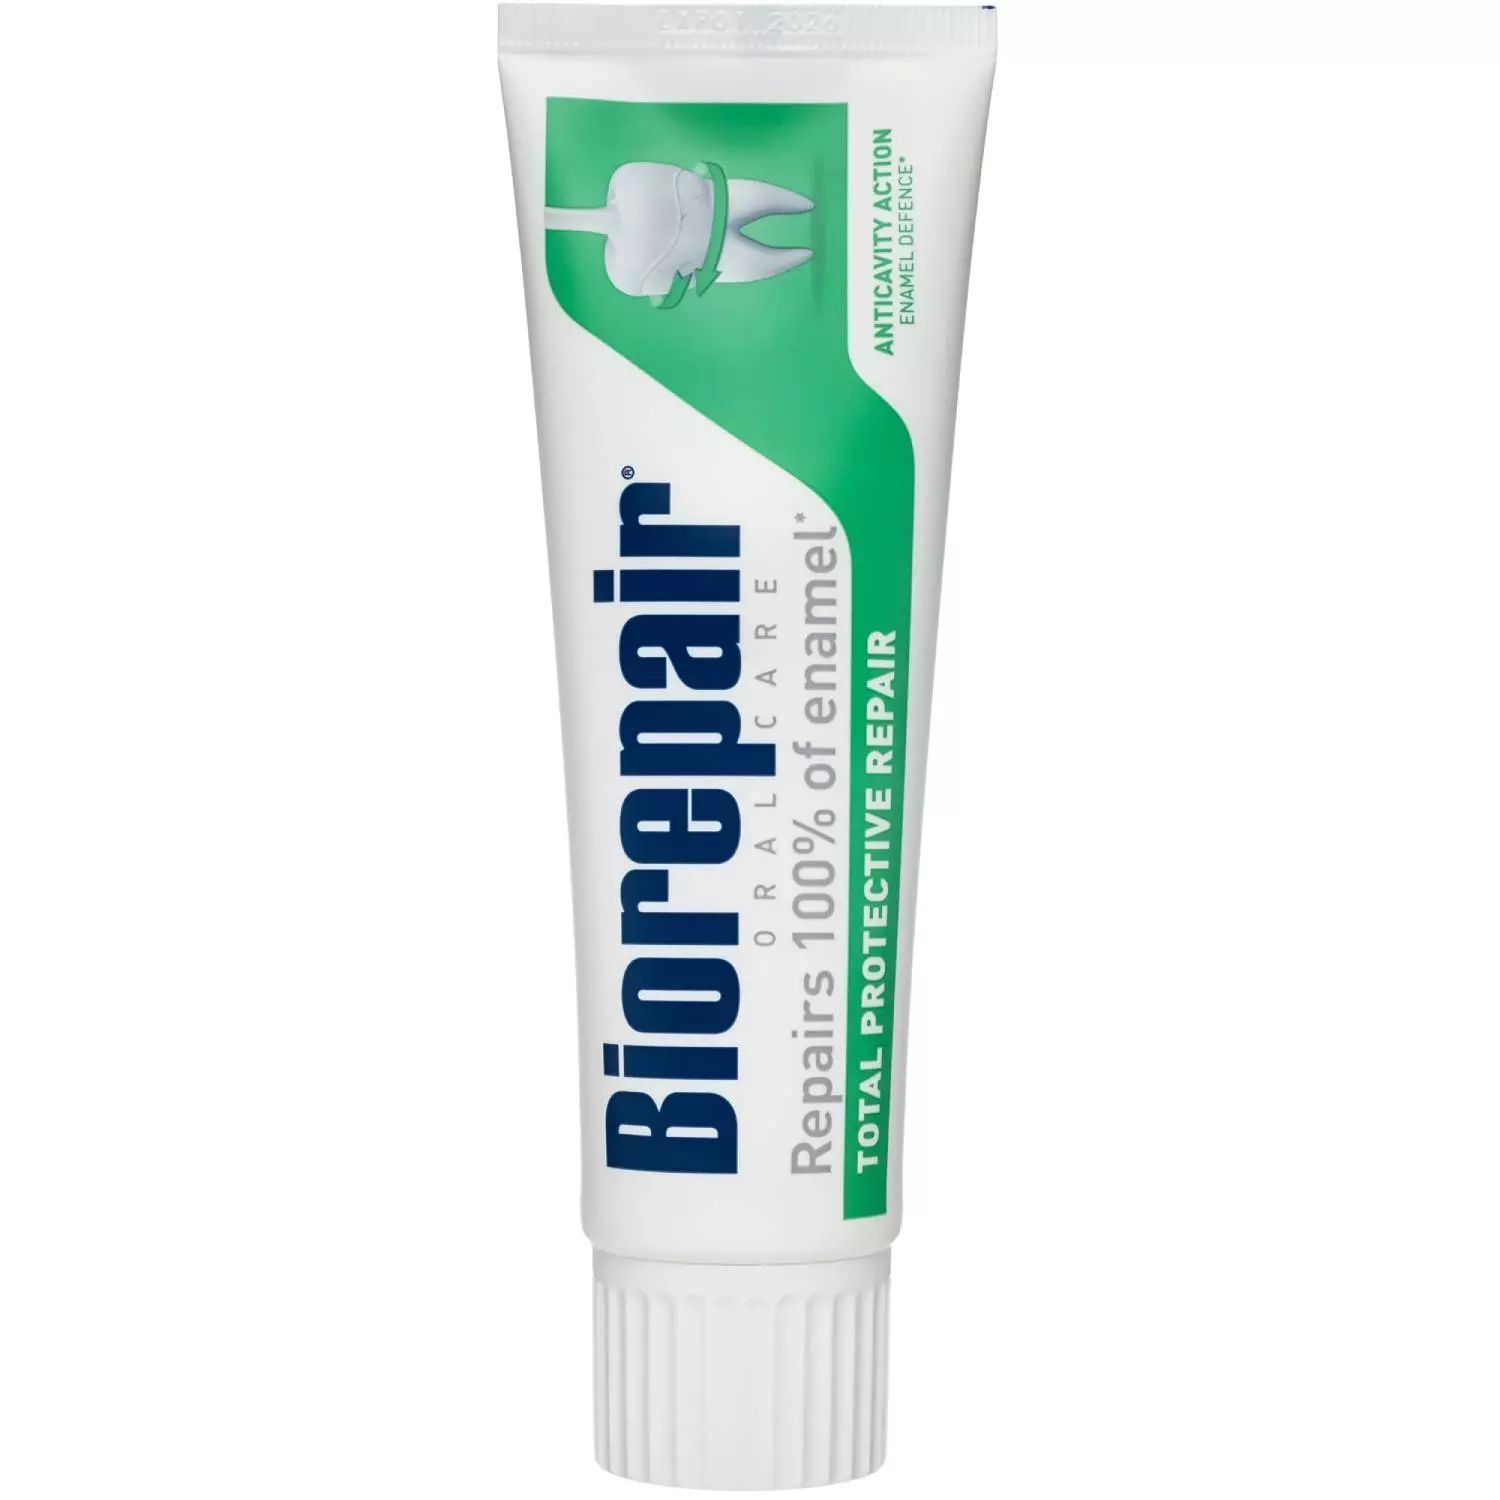 Зубная паста Biorepair Total Protective Repair 75 мл зубная паста biorepair total protective repair комплексная защита 75мл х 2 шт